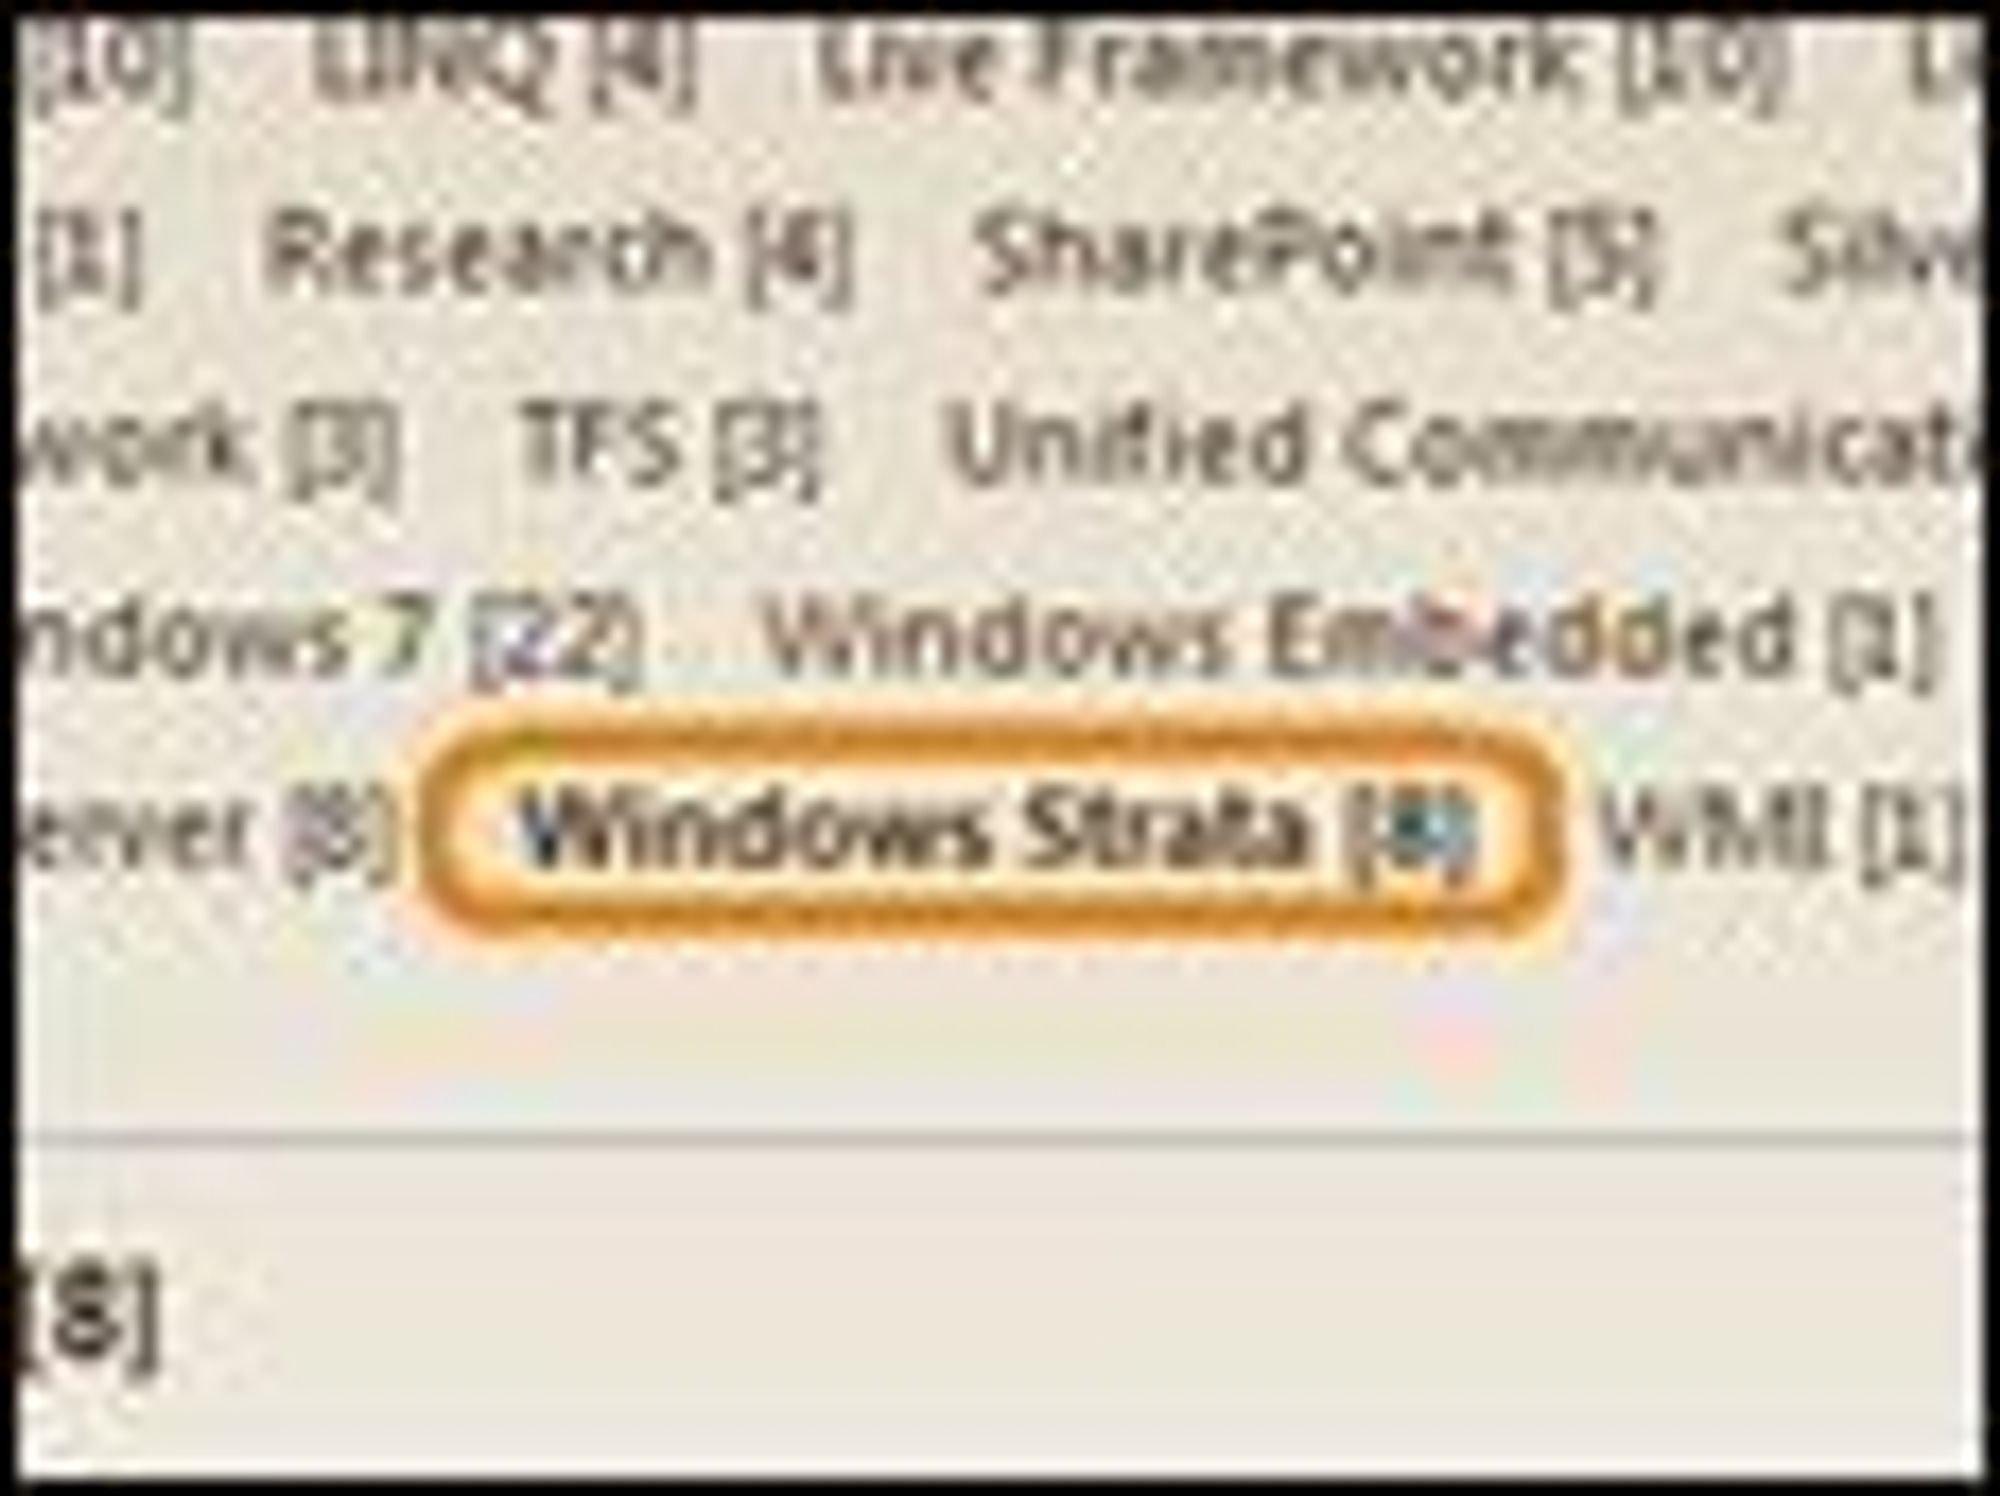 PDC 2008-fordrag, inkludert kategorien Windows Strata, som senere har blitt fjernet. Bilde: Kit Ong